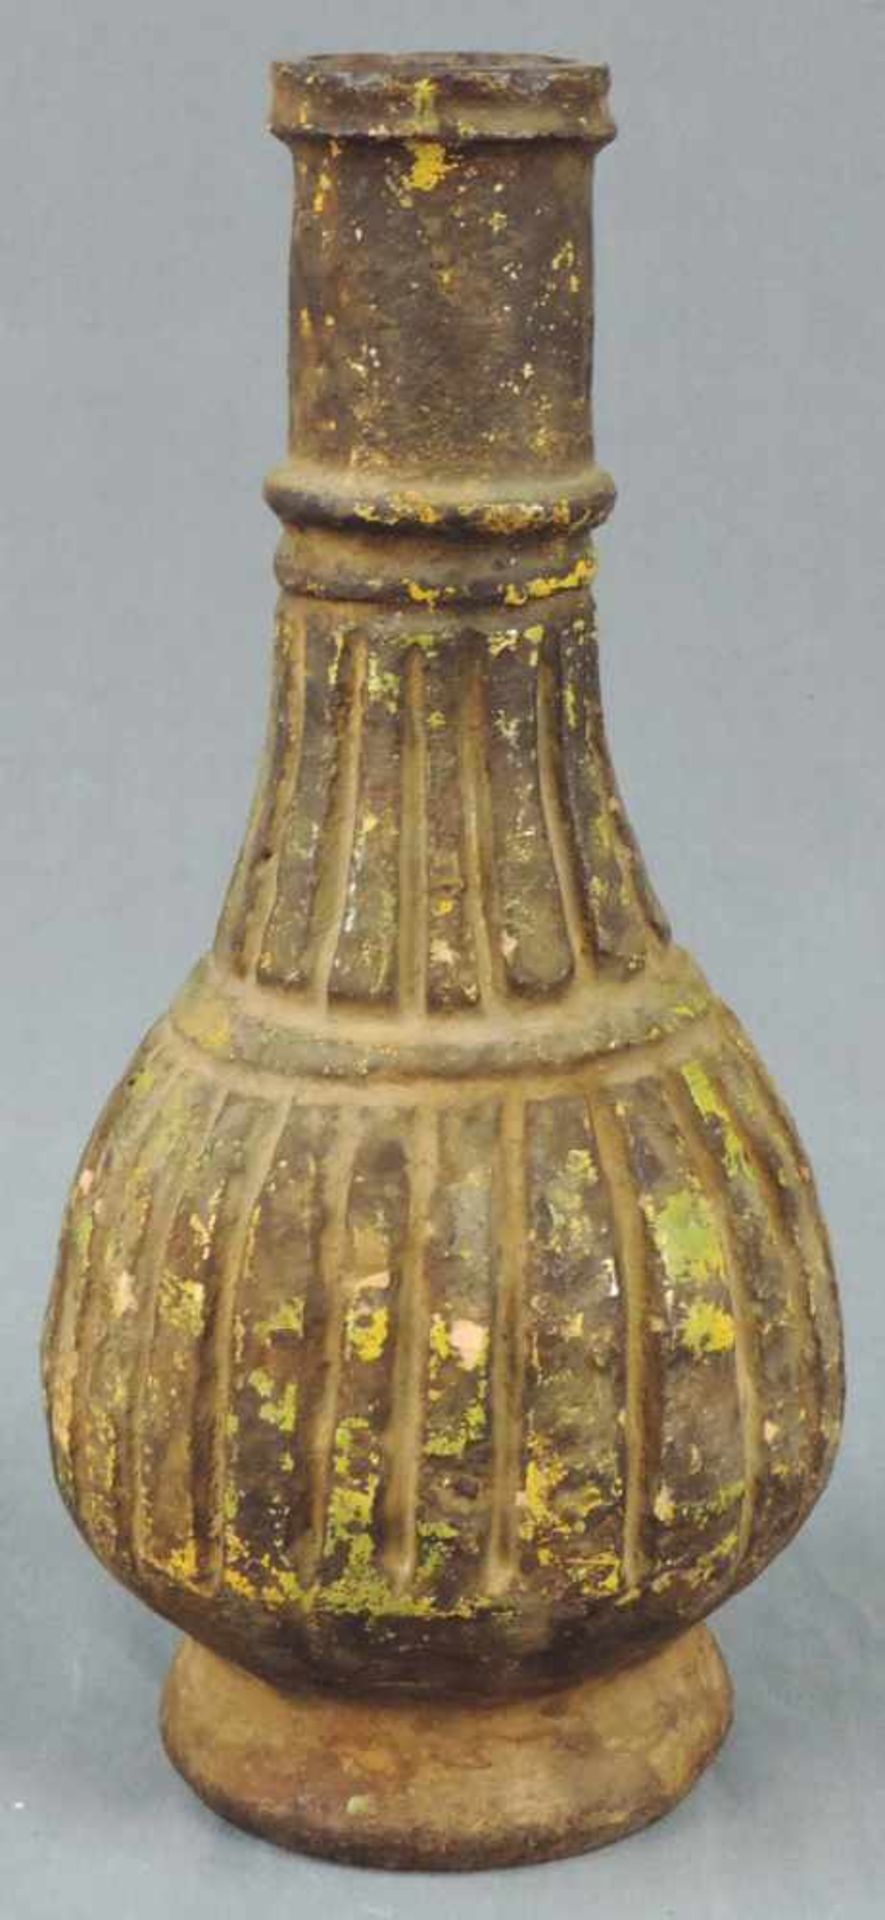 Vase mit Rillendekor. Steingut. Wohl Zentralasien, antik.32 cm hoch.Vase with groove decor. - Image 2 of 6